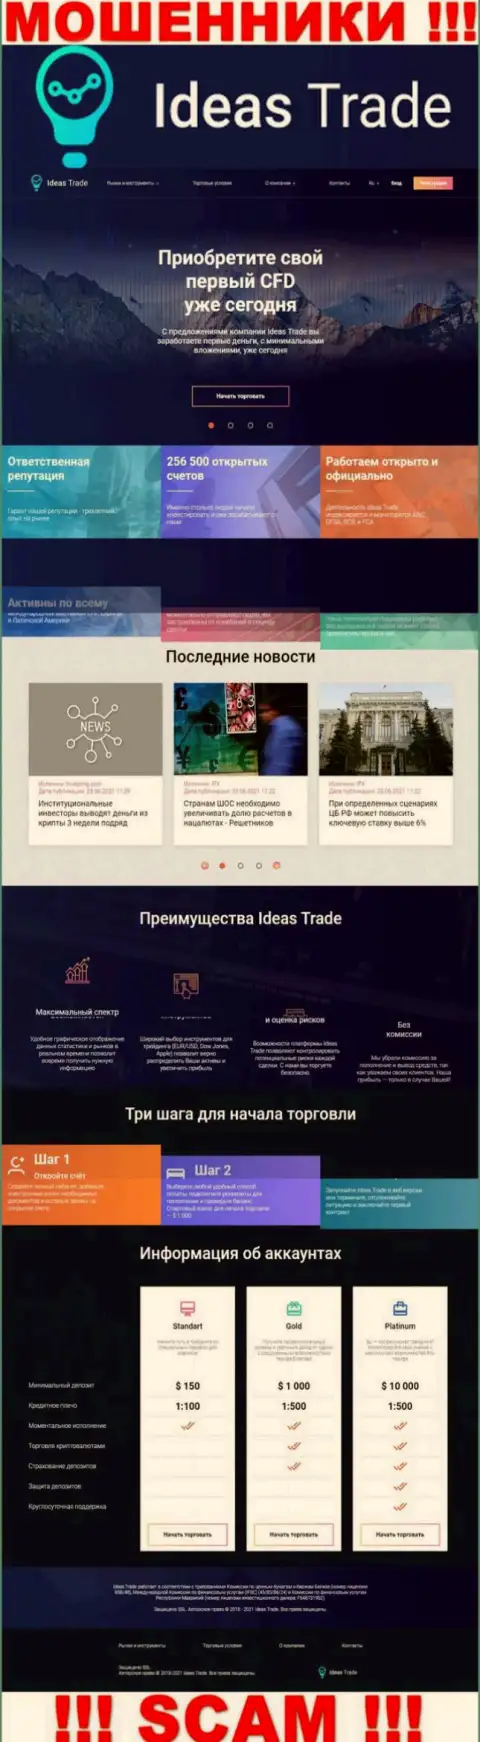 Официальный интернет-портал мошенников IdeasTrade